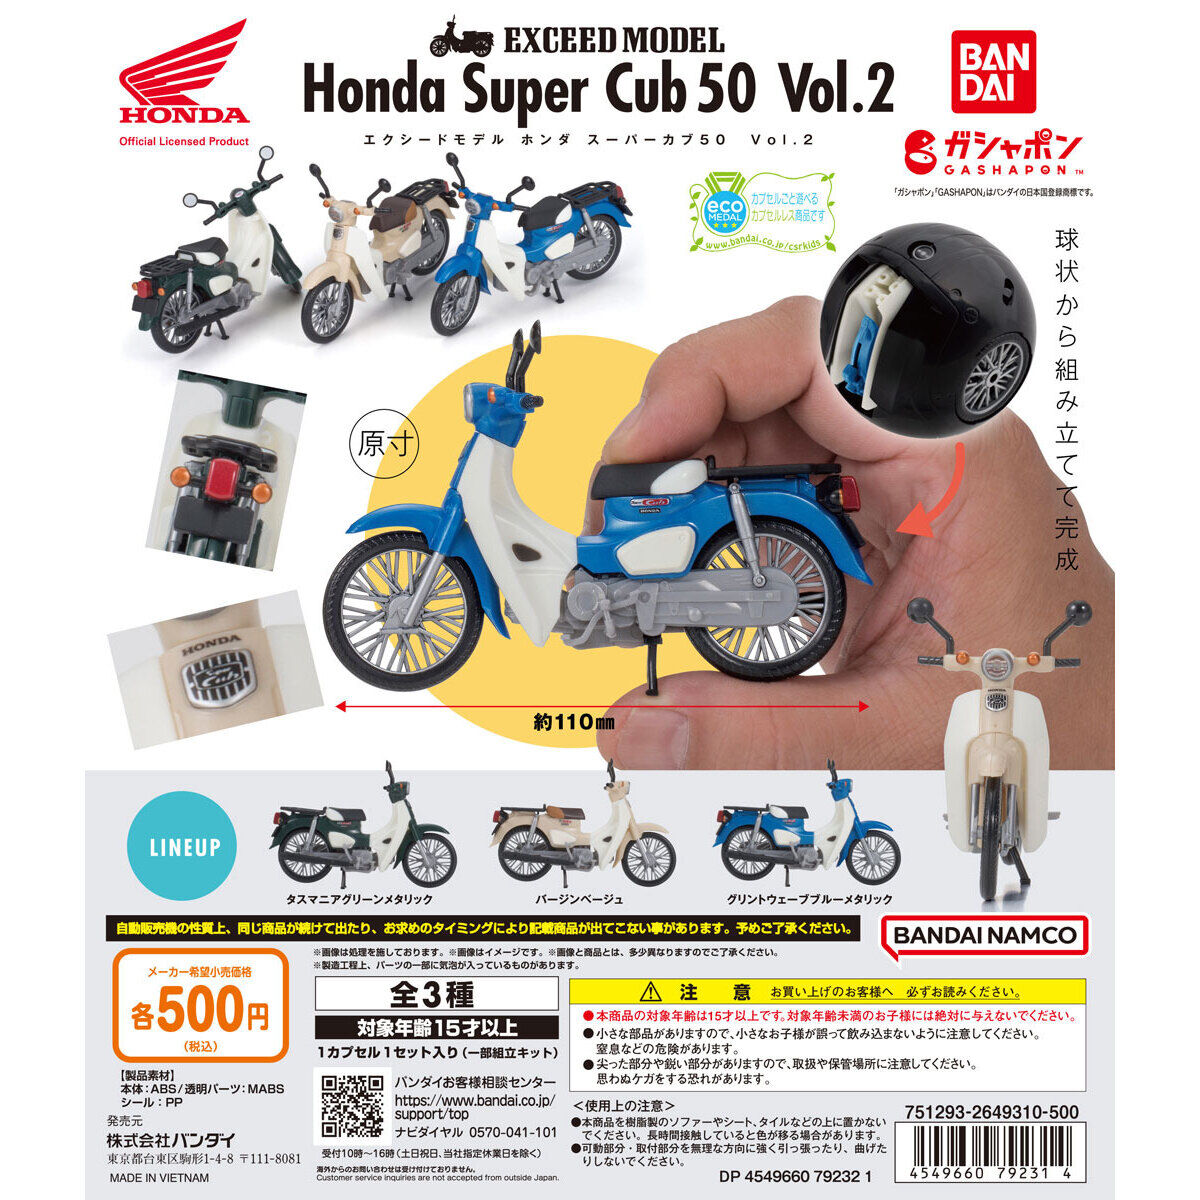 EXCEED MODEL Honda Super Cub 50 Vol.2｜ガシャポンオフィシャルサイト